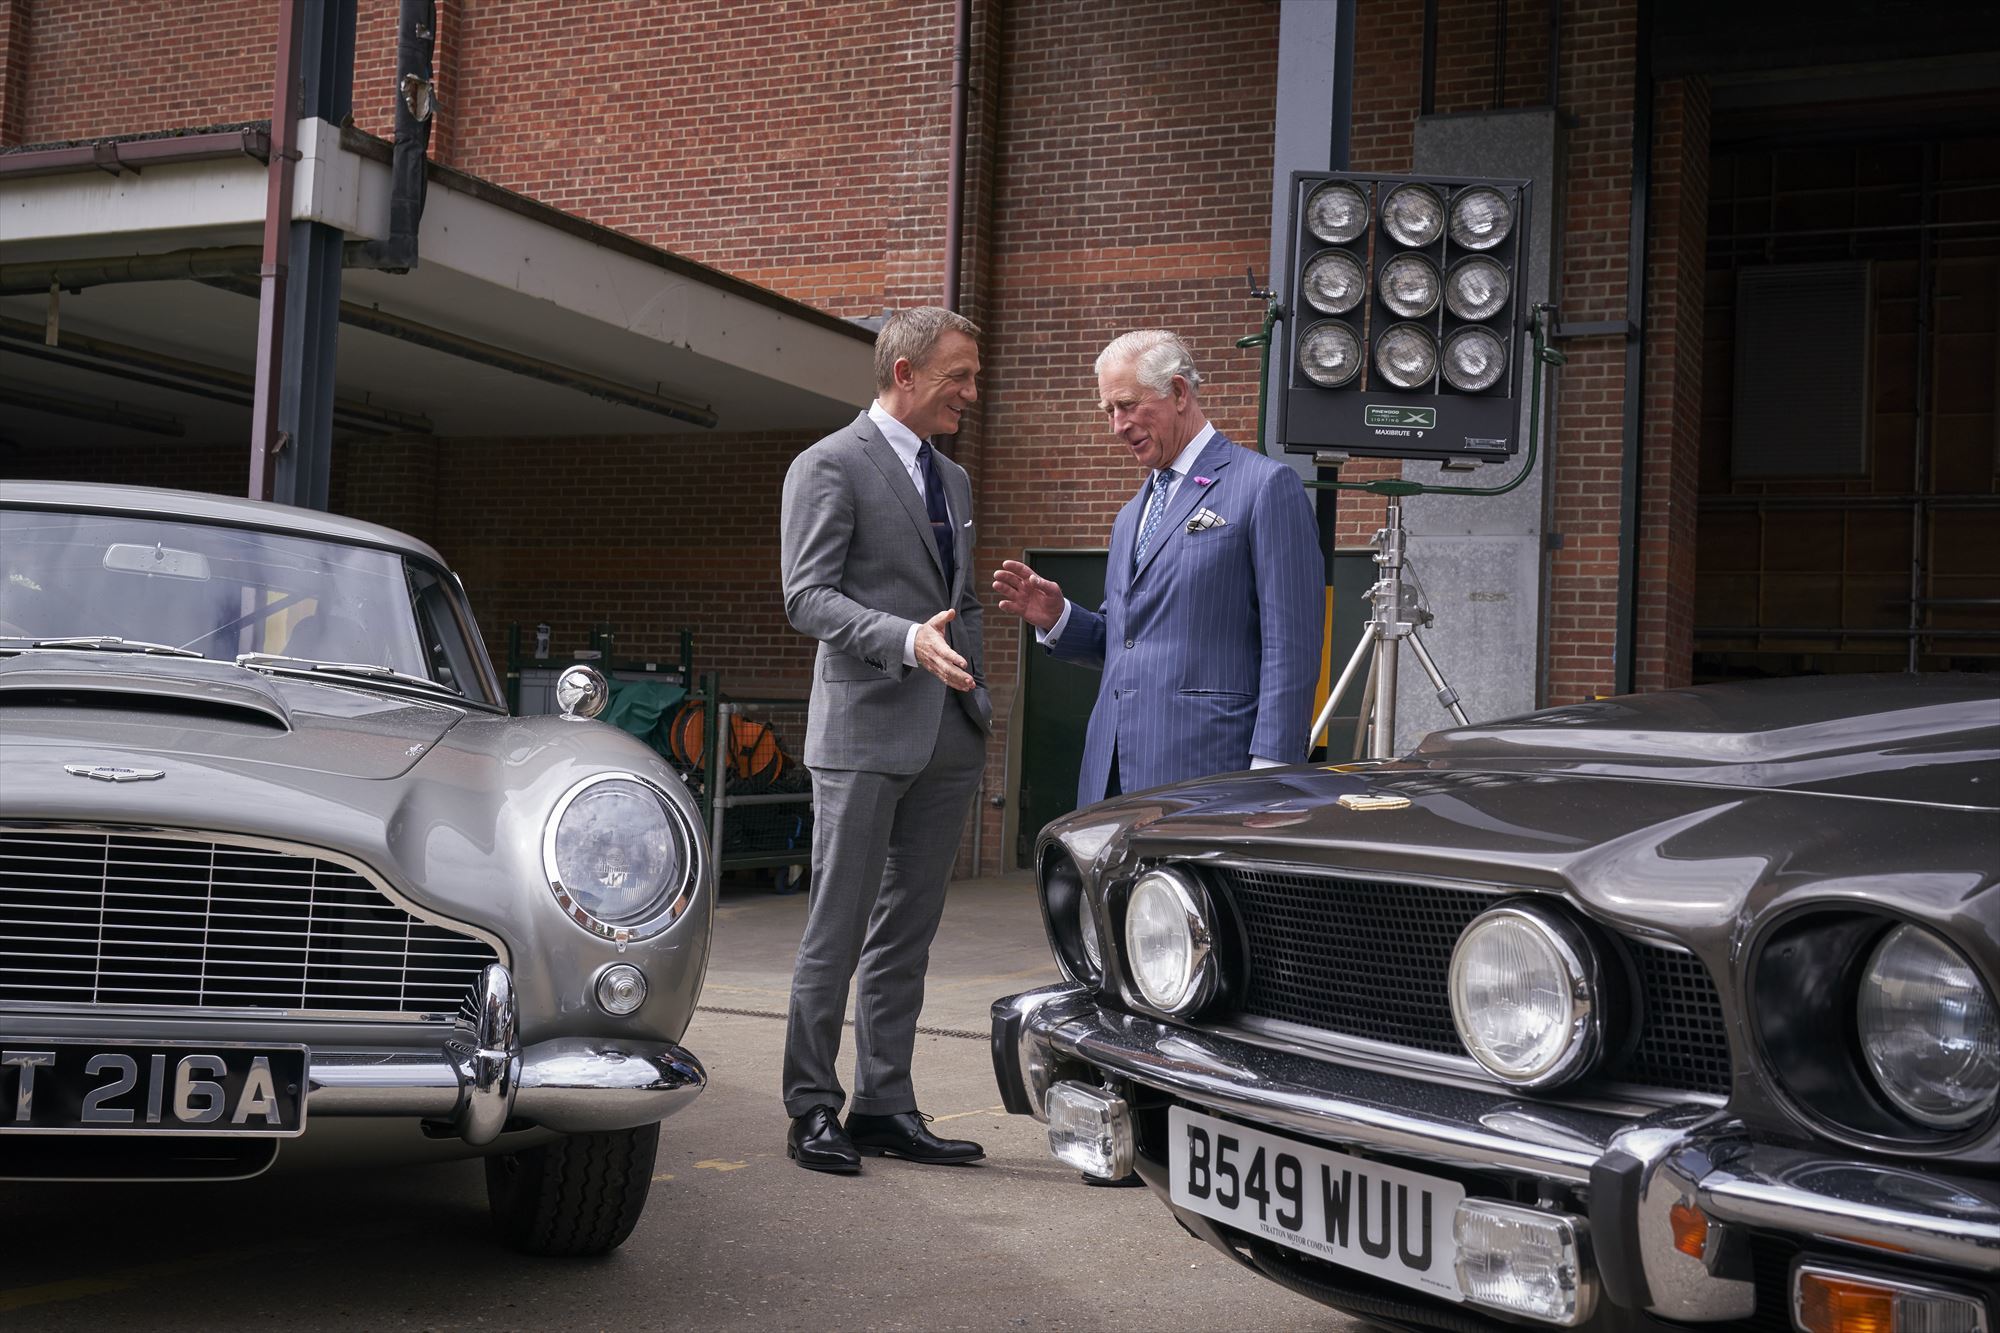 007シリーズ最新作 Bond 25 メイキング映像を公開 ジェームズ ボンド ダニエル クレイグがチャールズ皇太子と対面も Spice エンタメ特化型情報メディア スパイス